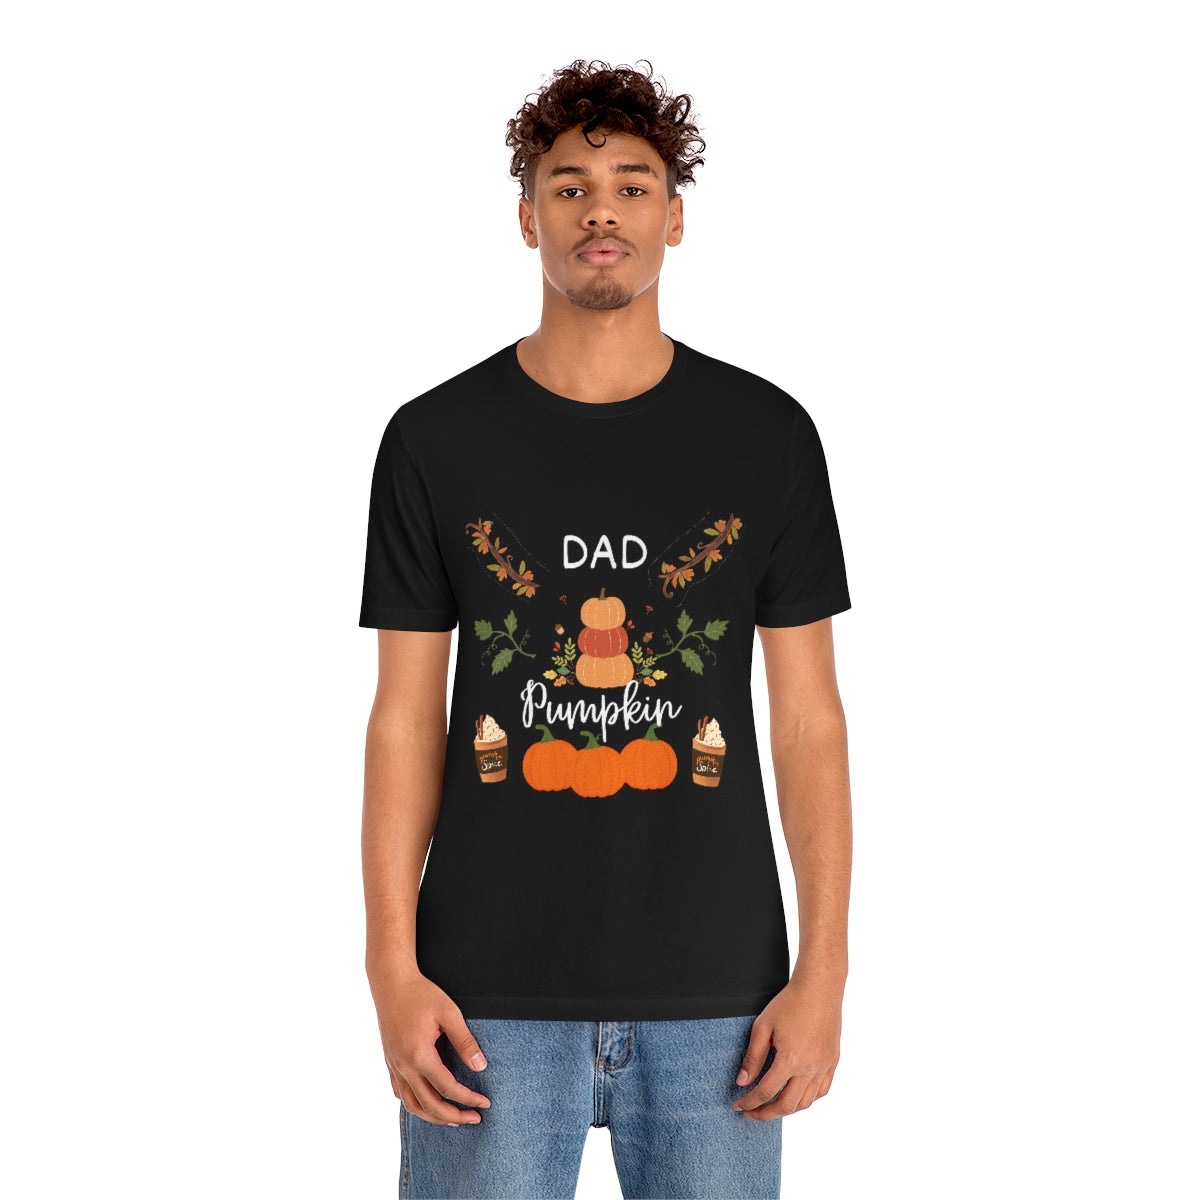 Dad Pumpkin T-shirt